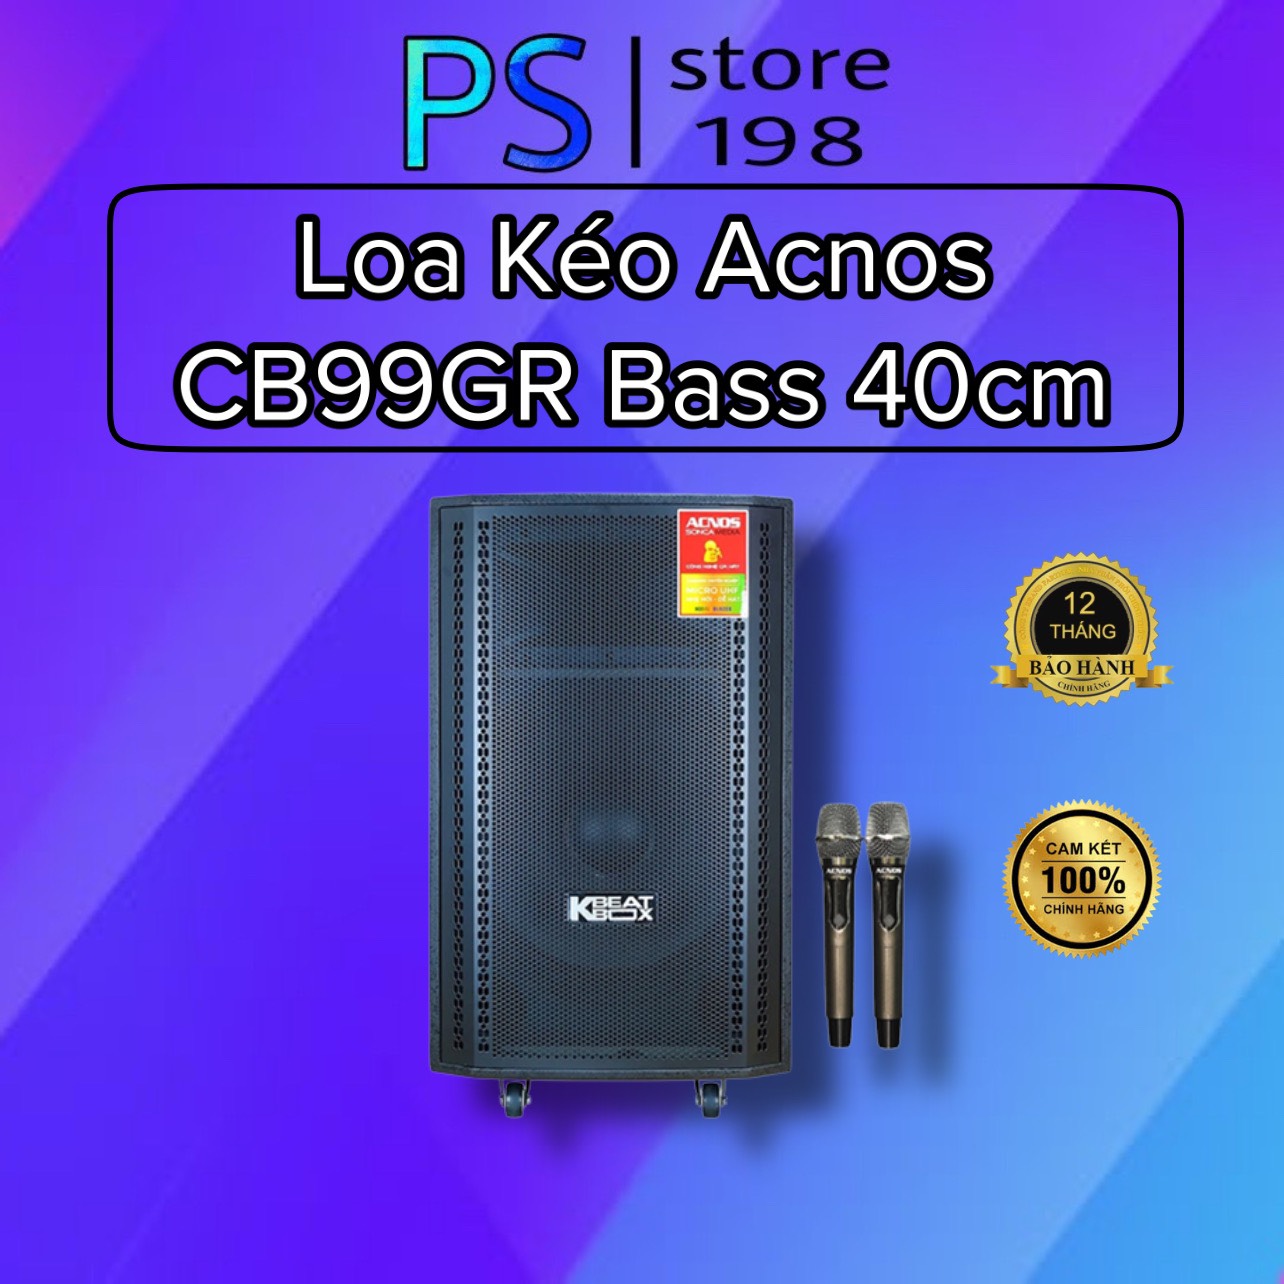 Loa kéo Acnos CB99GR Bass 40cm 450w - hàng chính hãng